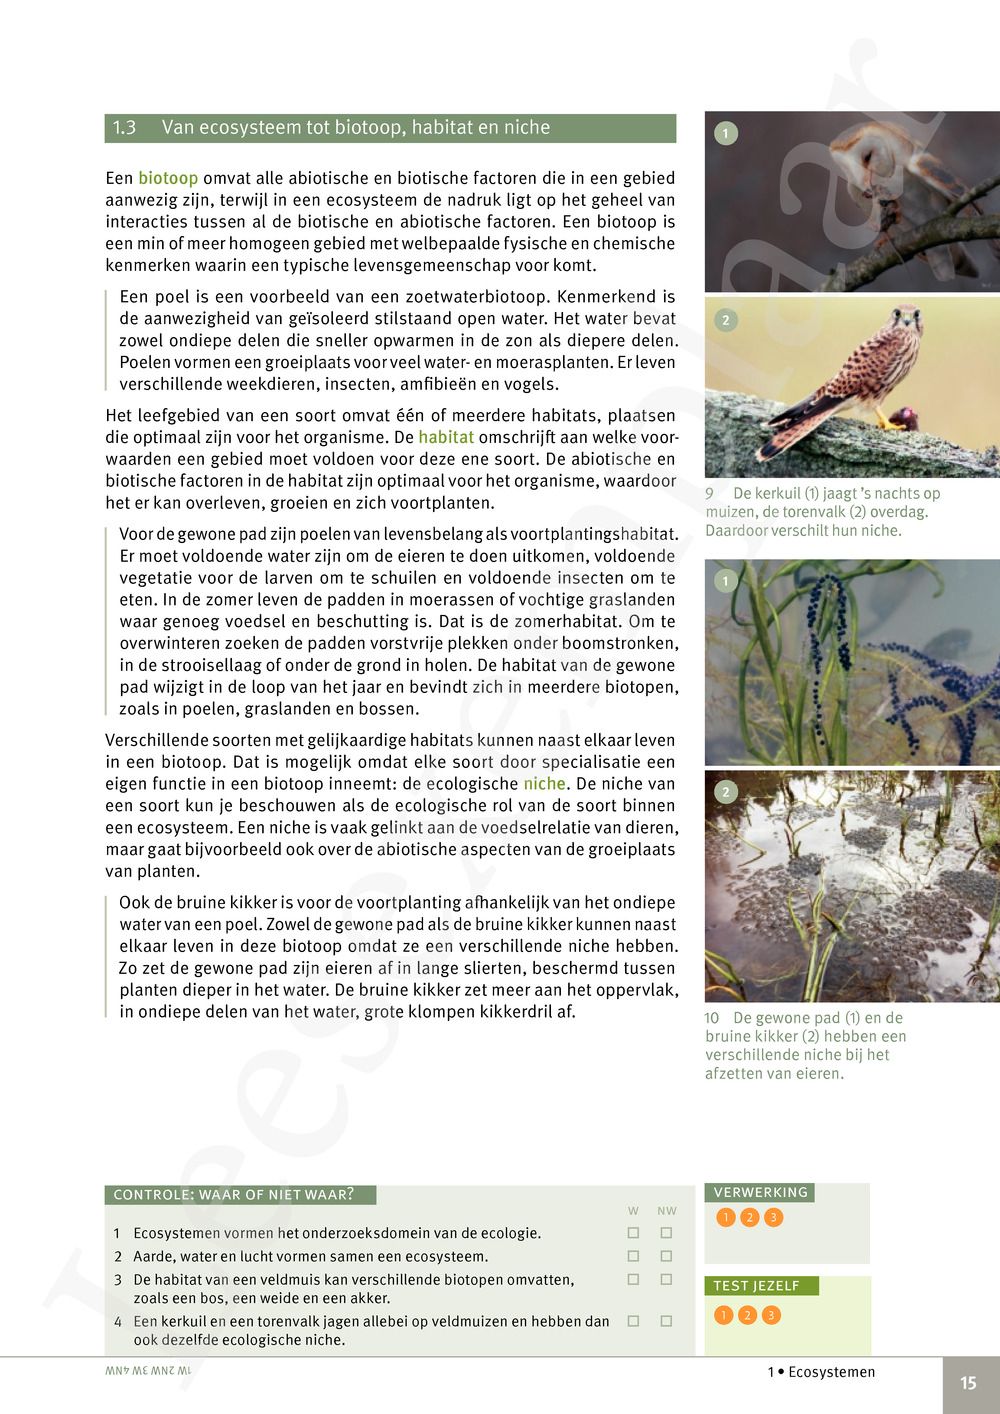 Preview: Focus Biologie 4.2 Leerwerkboek (incl. Pelckmans Portaal)